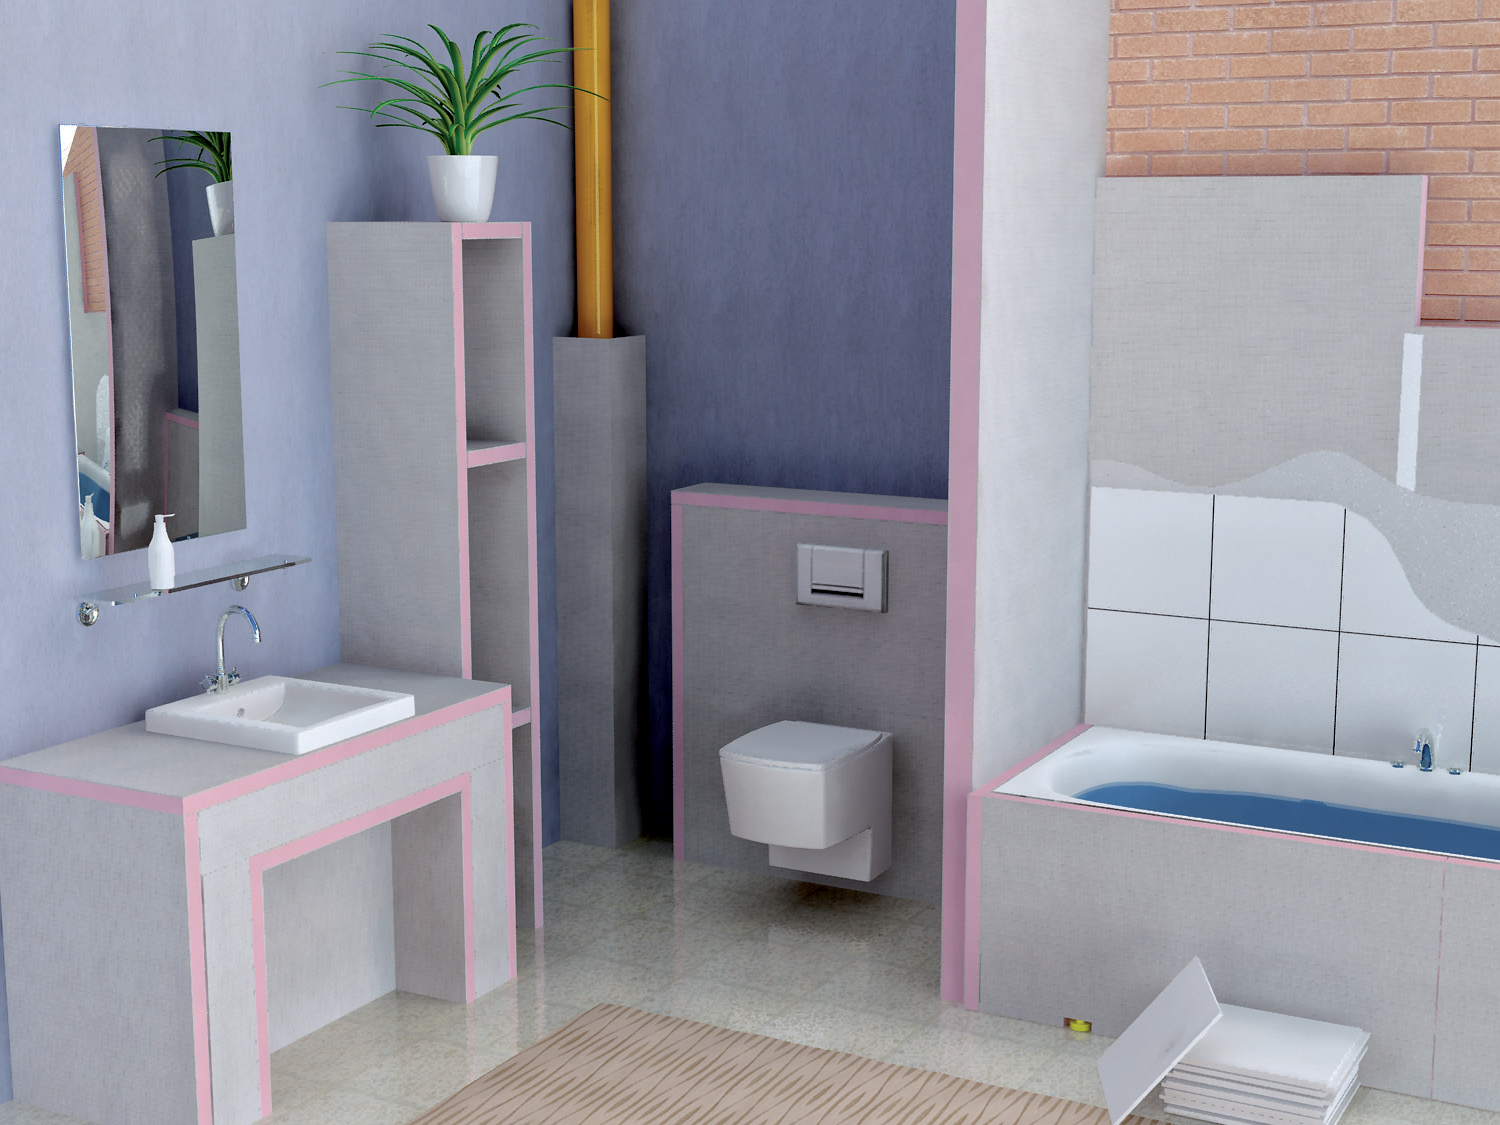 Príklady všestranného použitia UNIPLATNÍ v interiéri - špeciálne vo vlhkom prostredí kúpeľne